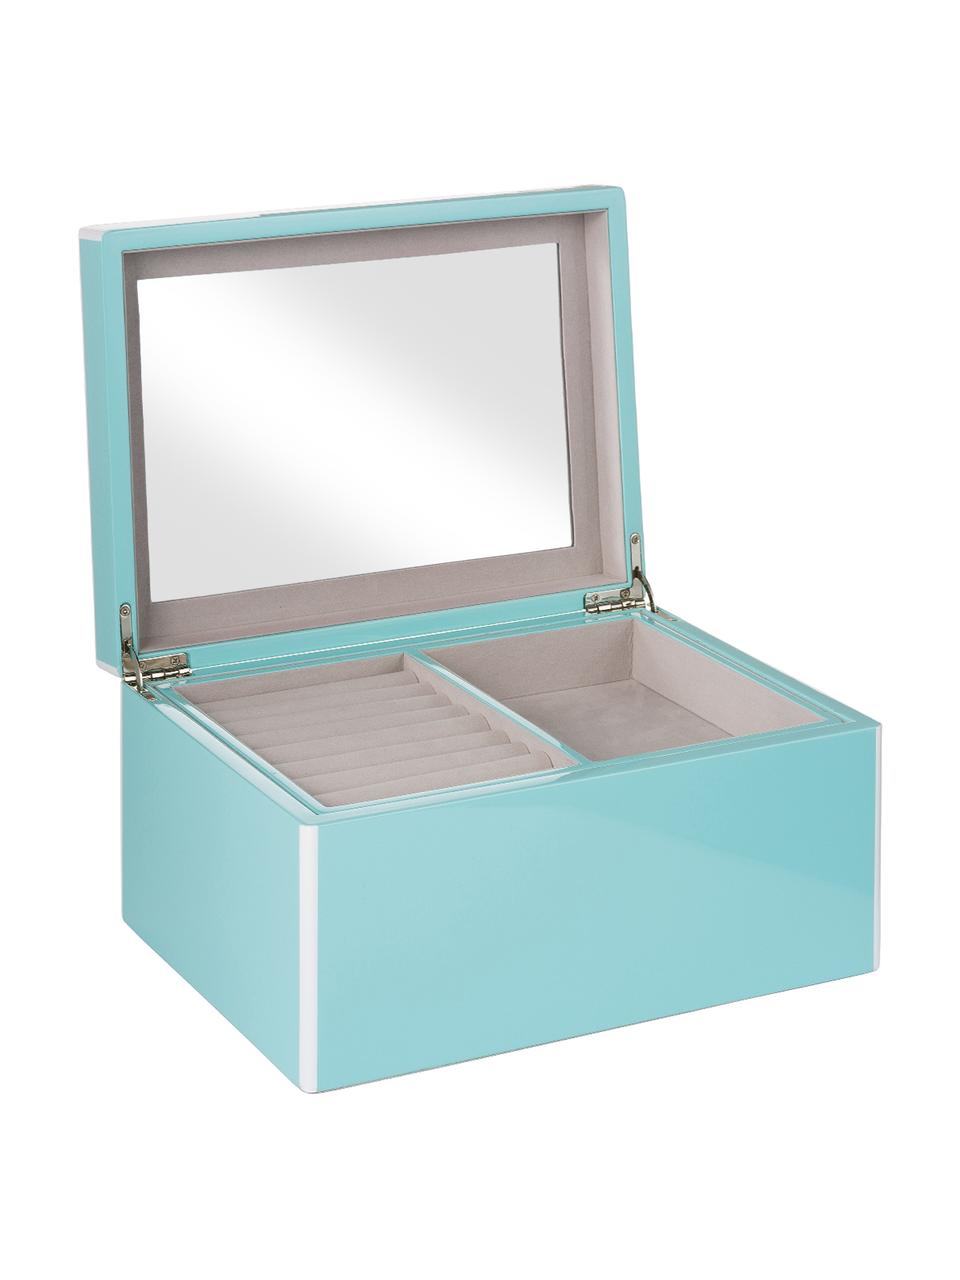 Schmuckbox Taylor mit Spiegel, Unterseite: Samt zur Schonung der Möb, Hellblau, 26 x 13 cm